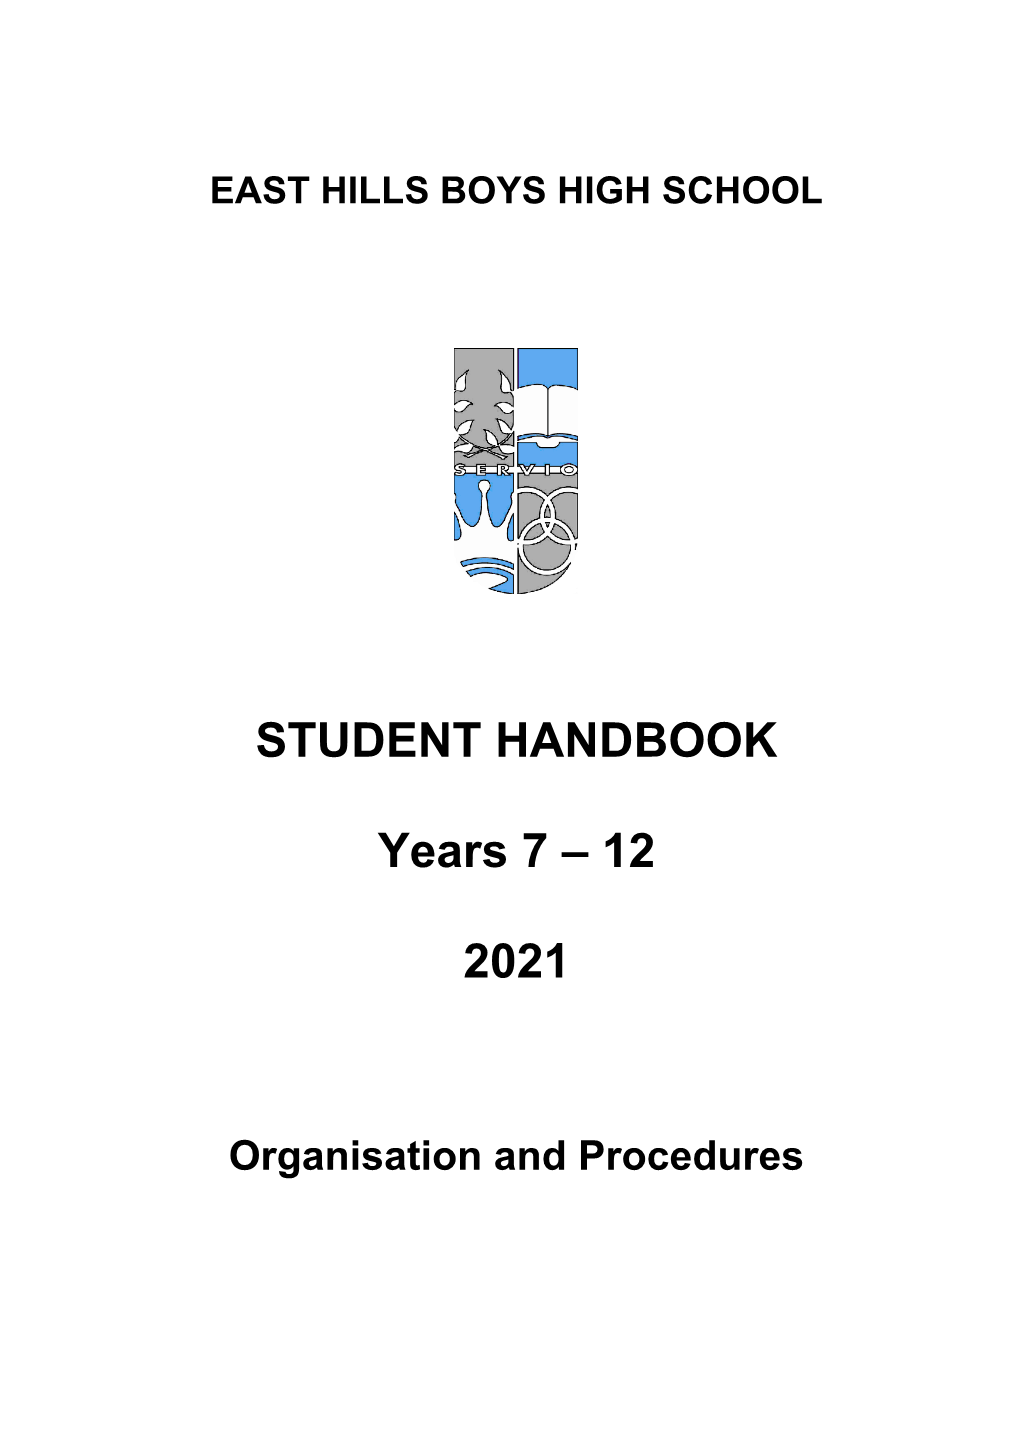 STUDENT HANDBOOK Years 7 – 12 2021